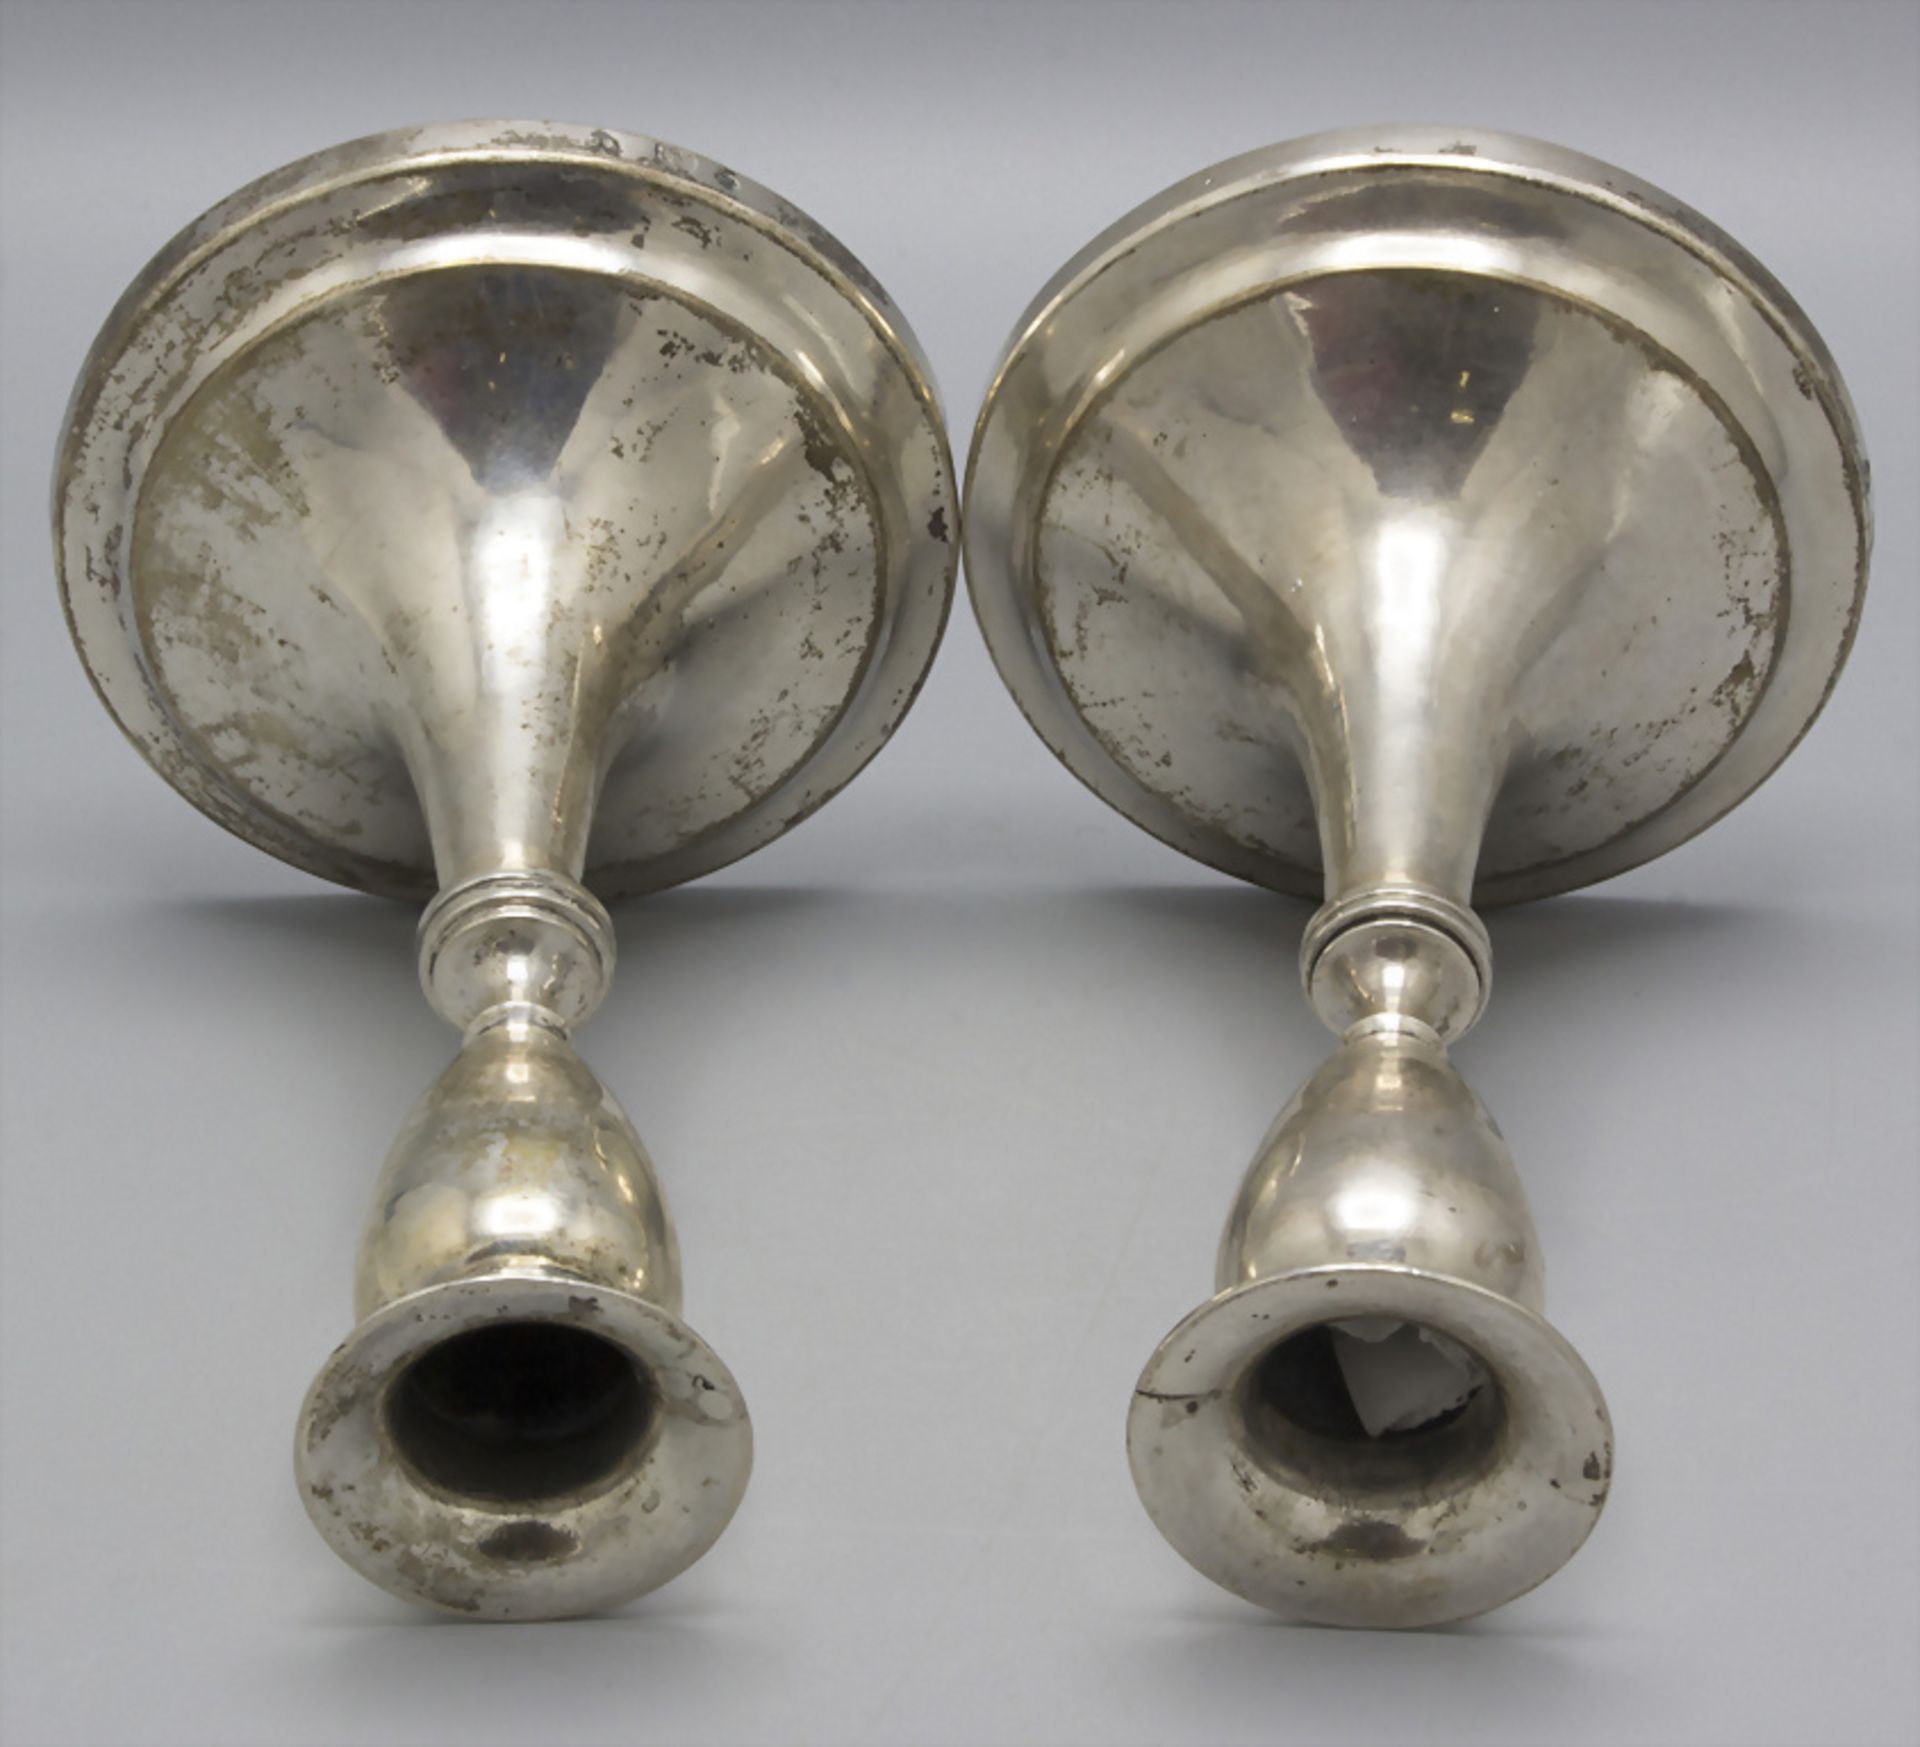 Paar Empire Reiseleuchter / A pair of Empire silver travel candlesticks, Bertold Gerder, Wien, 1818 - Bild 2 aus 5